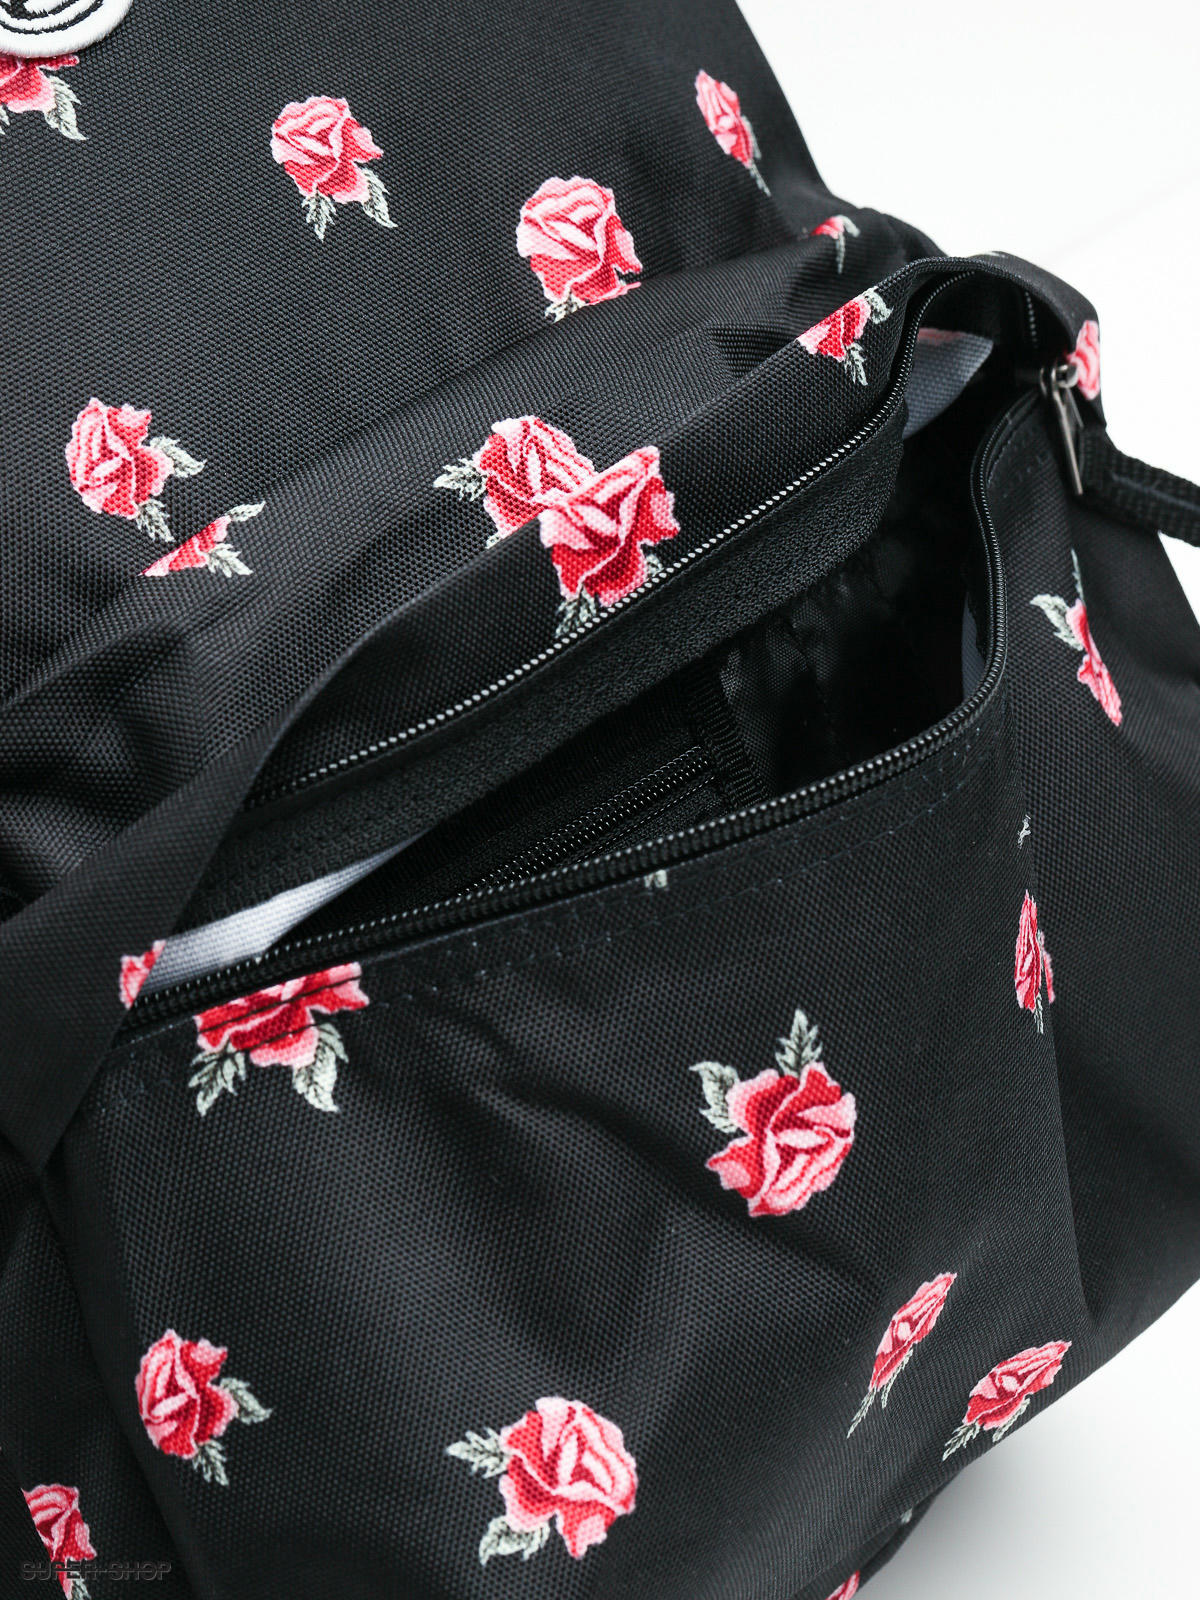 realm backpack black rose